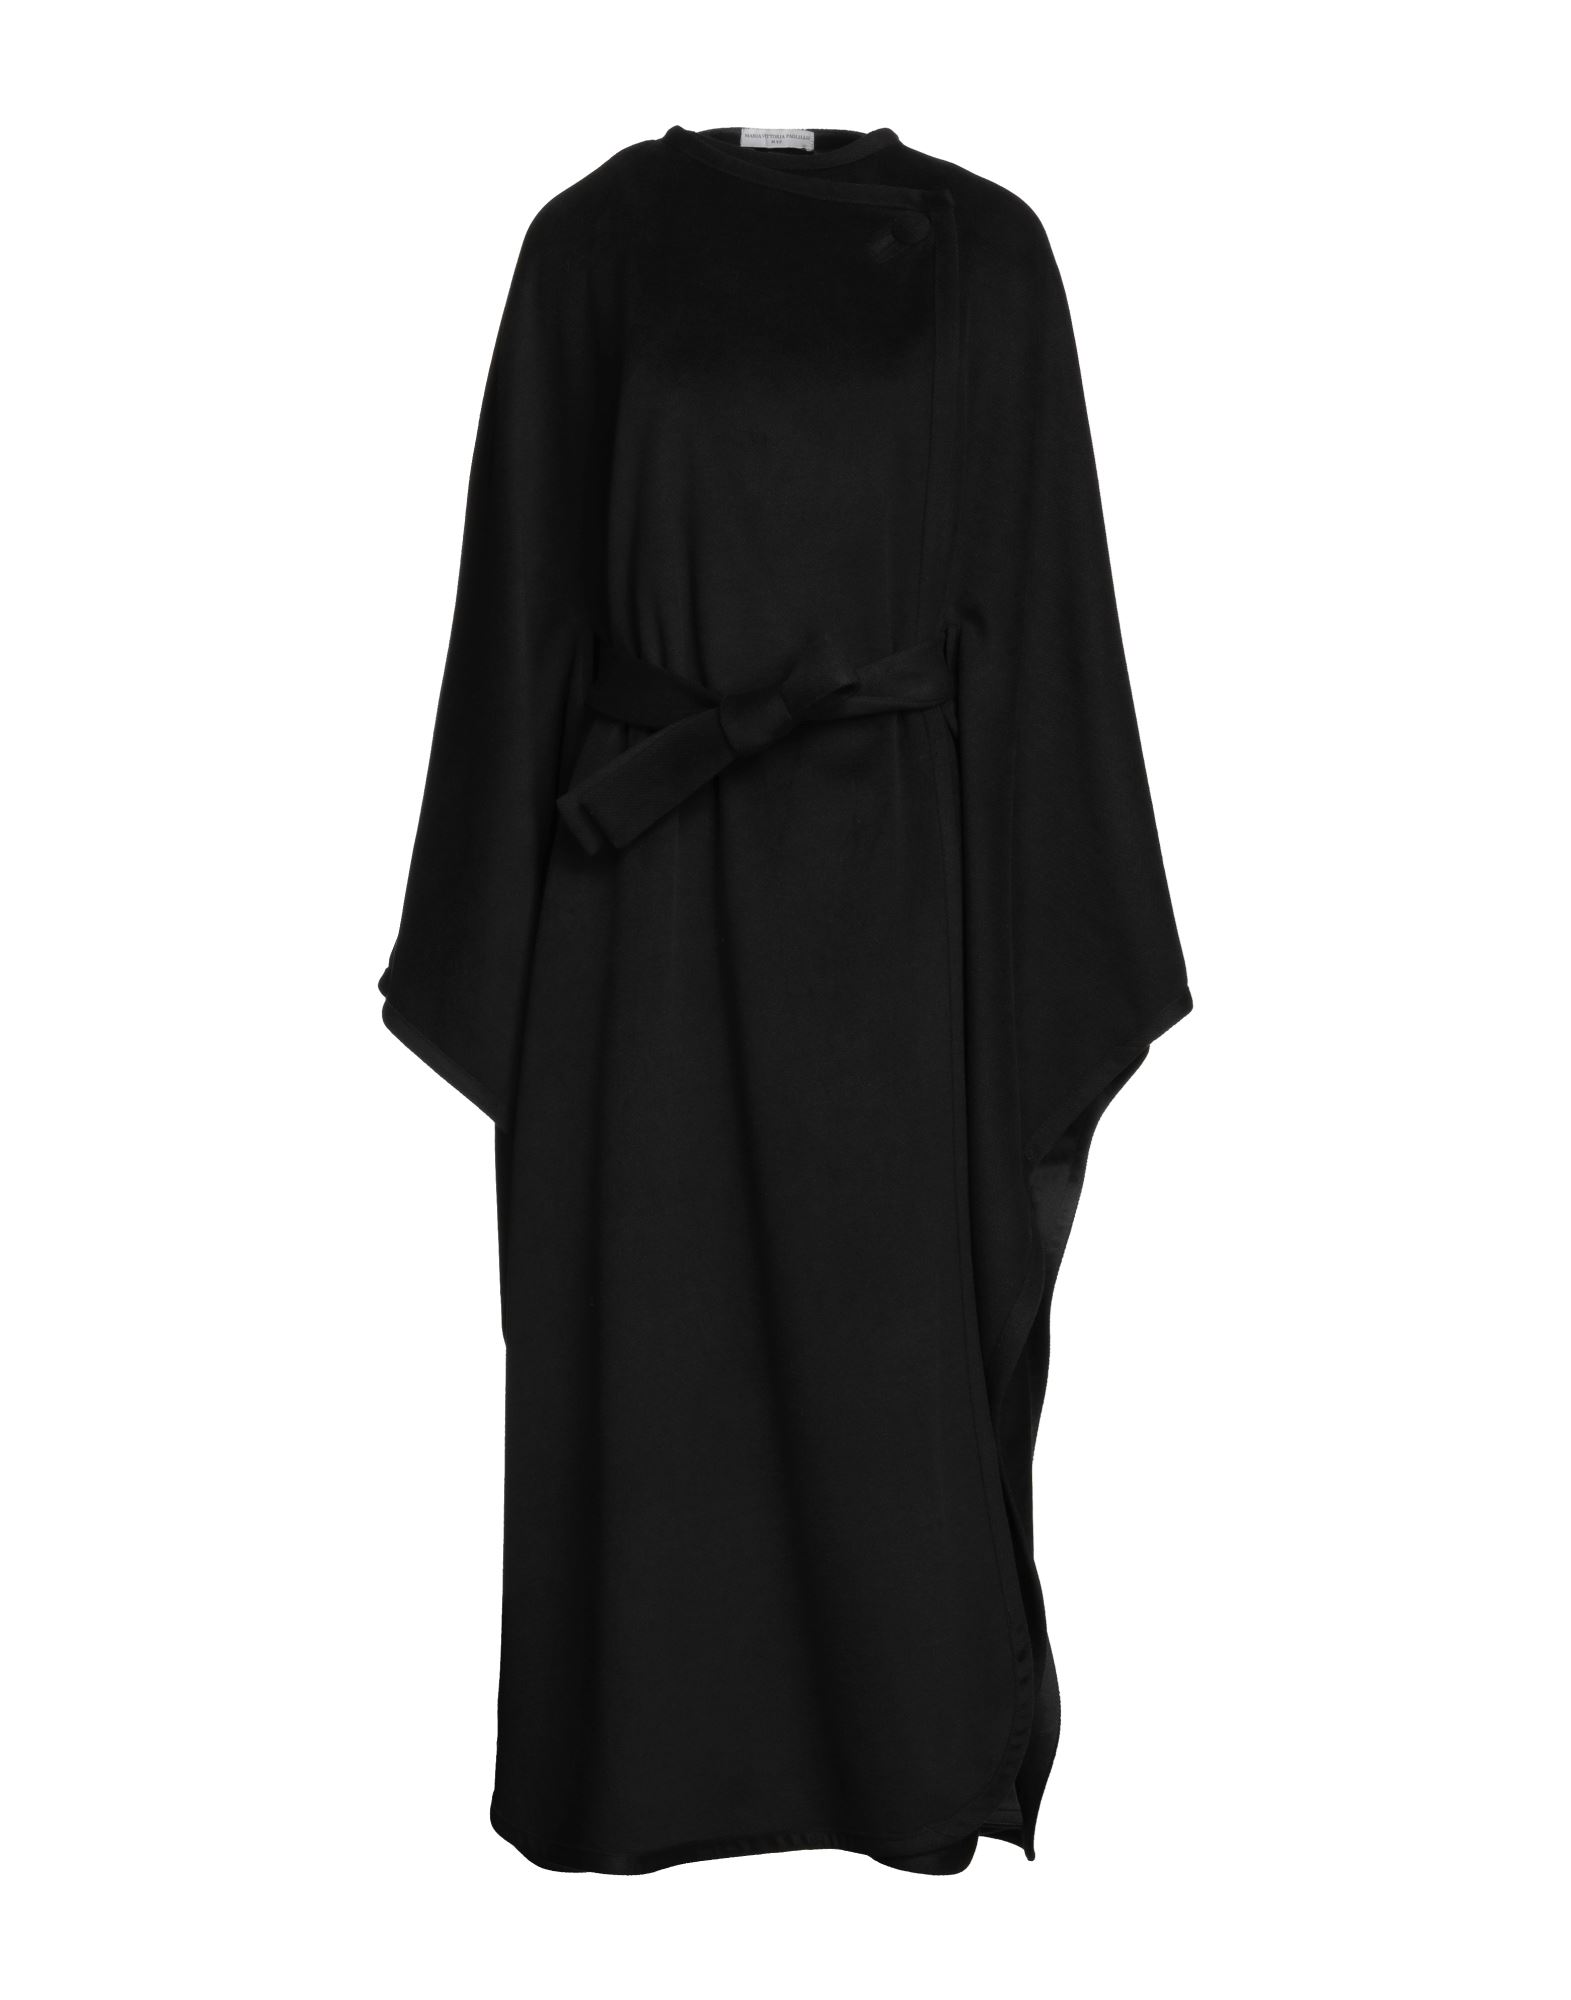 Maria Vittoria Paolillo Mvp Woman Capes & Ponchos Black Size 8 Polyester, Viscose